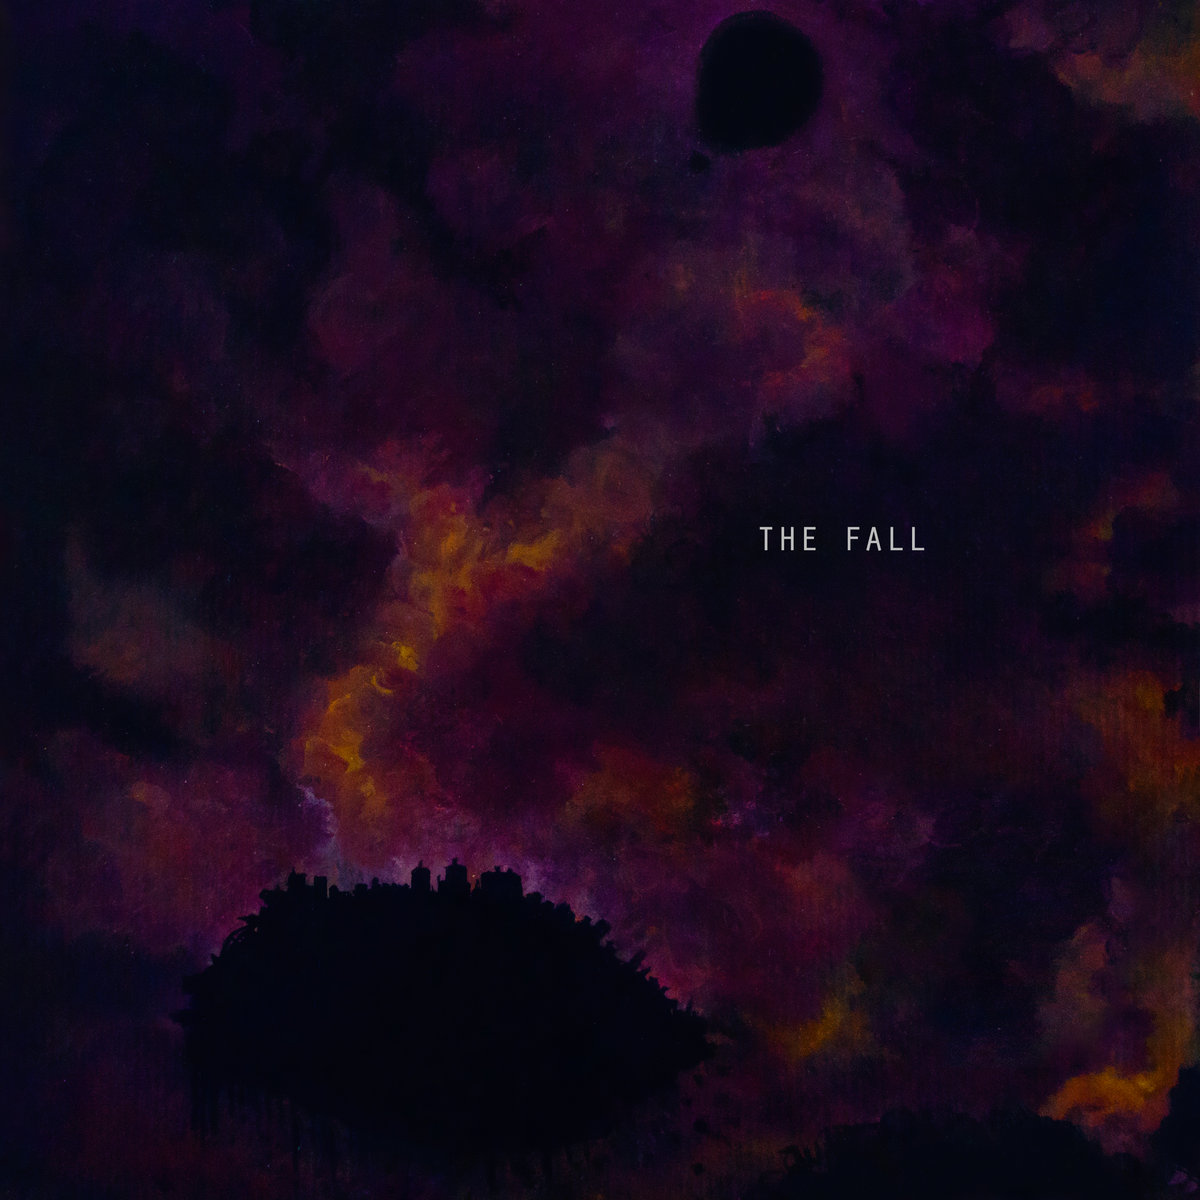 Bildresultat för Montgolfière ”The Fall”